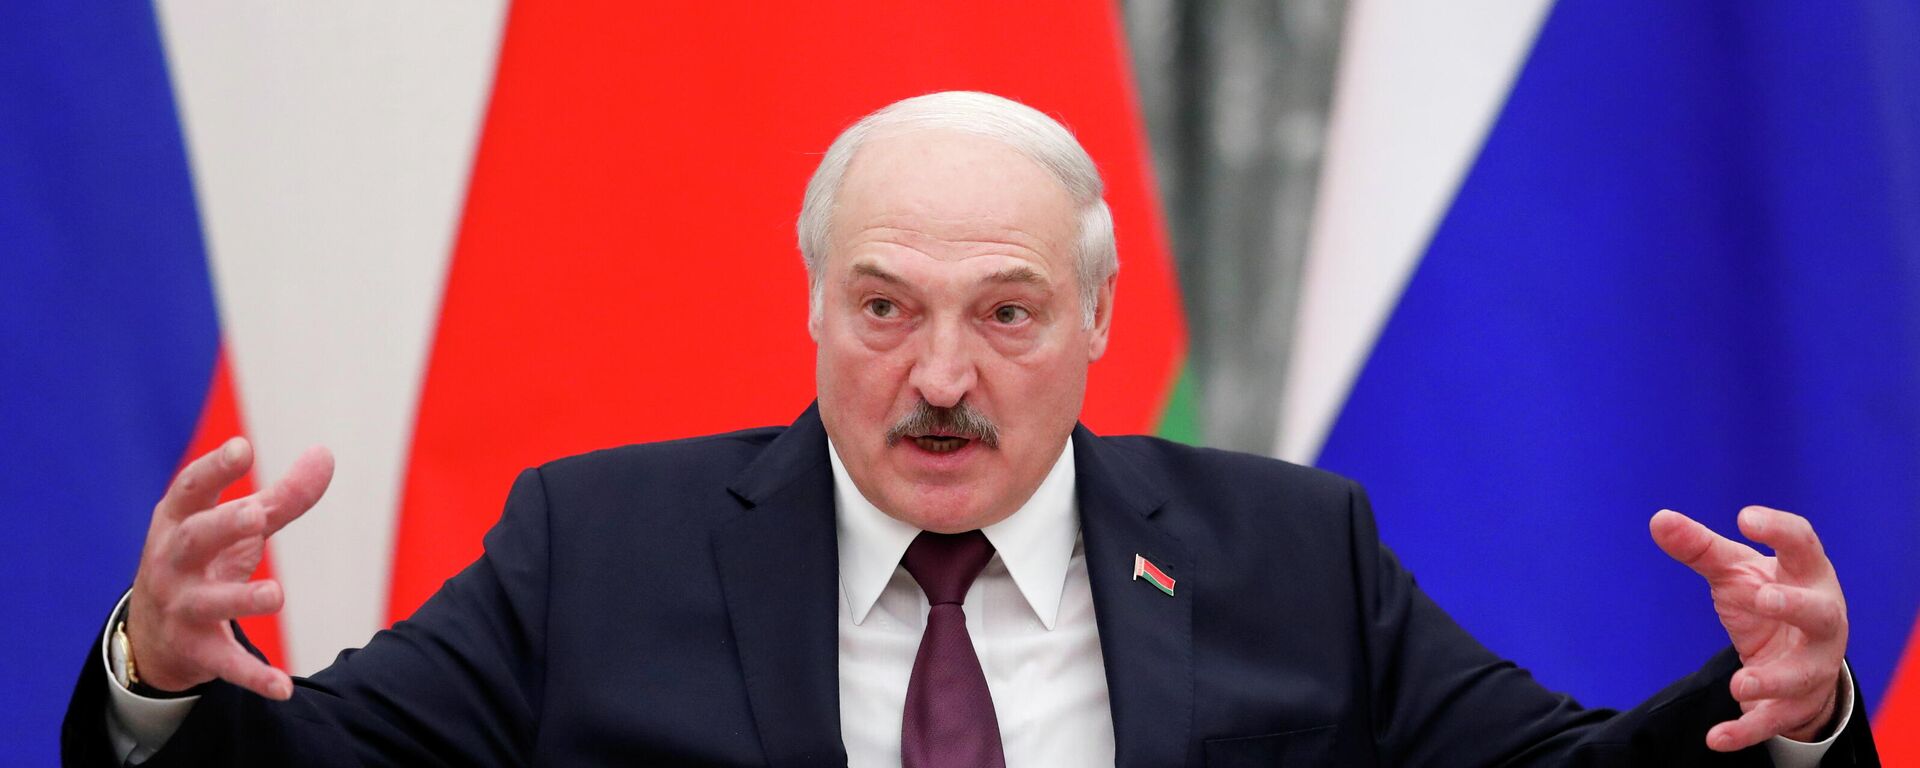 Alexandr Lukashenko,  presidente de Bielorrusia - Sputnik Mundo, 1920, 02.12.2021